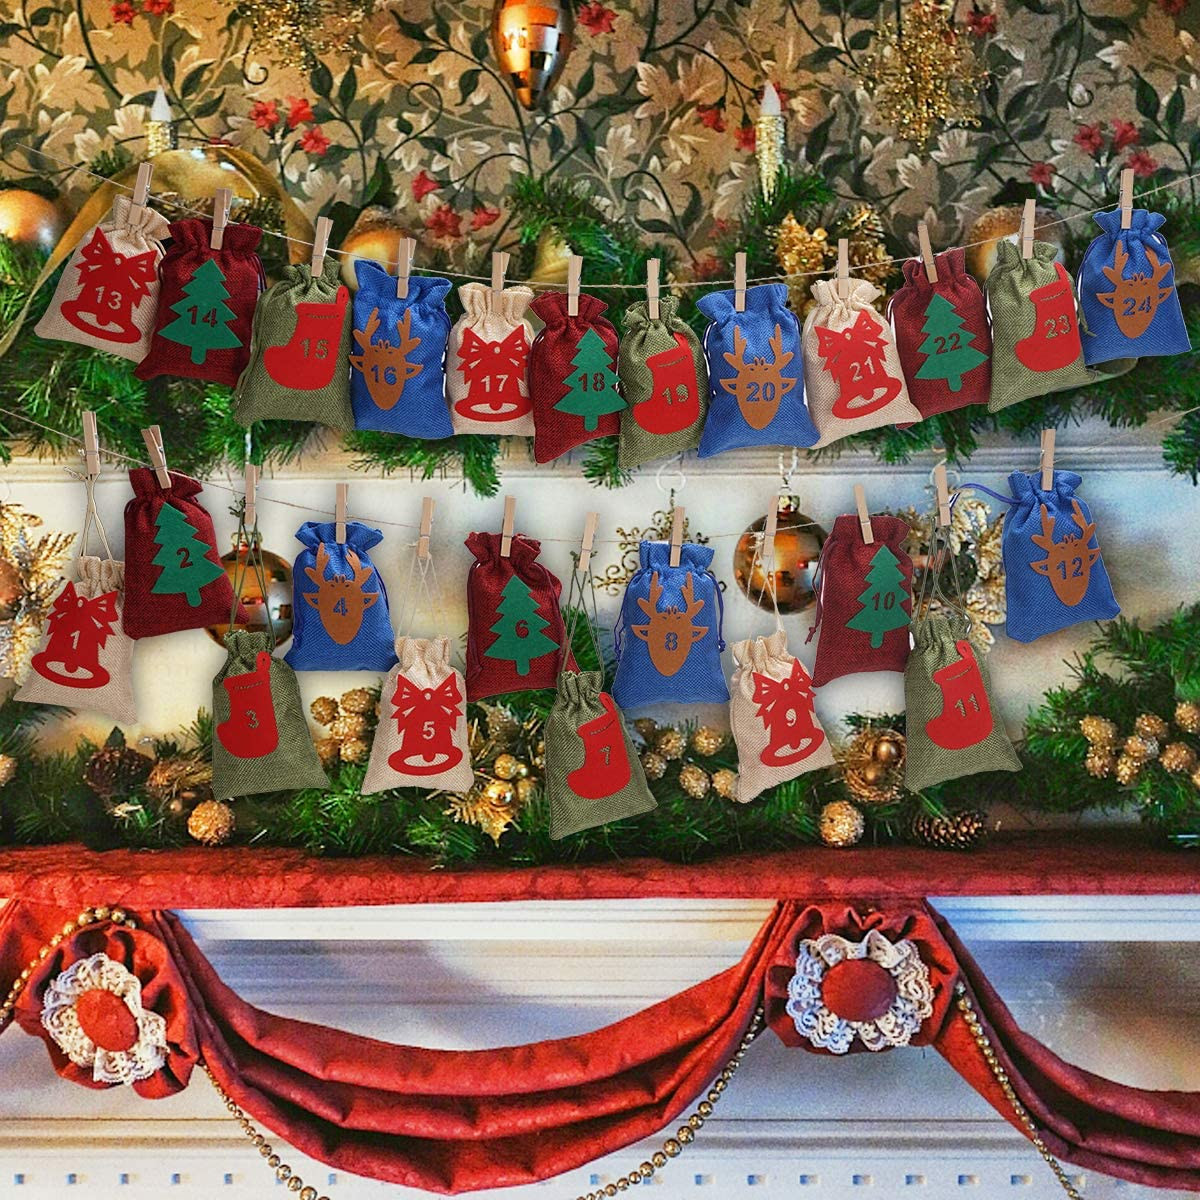 DASFOND Calendario de Adviento Saquitos 24 Piezas Calendario Adviento Navidad,24 Adhesivos Bolsa de Yute DIY Bolsa para Regalo Navidad,Decoración de Regalo Navidad Regalos de Acción de Gracias 